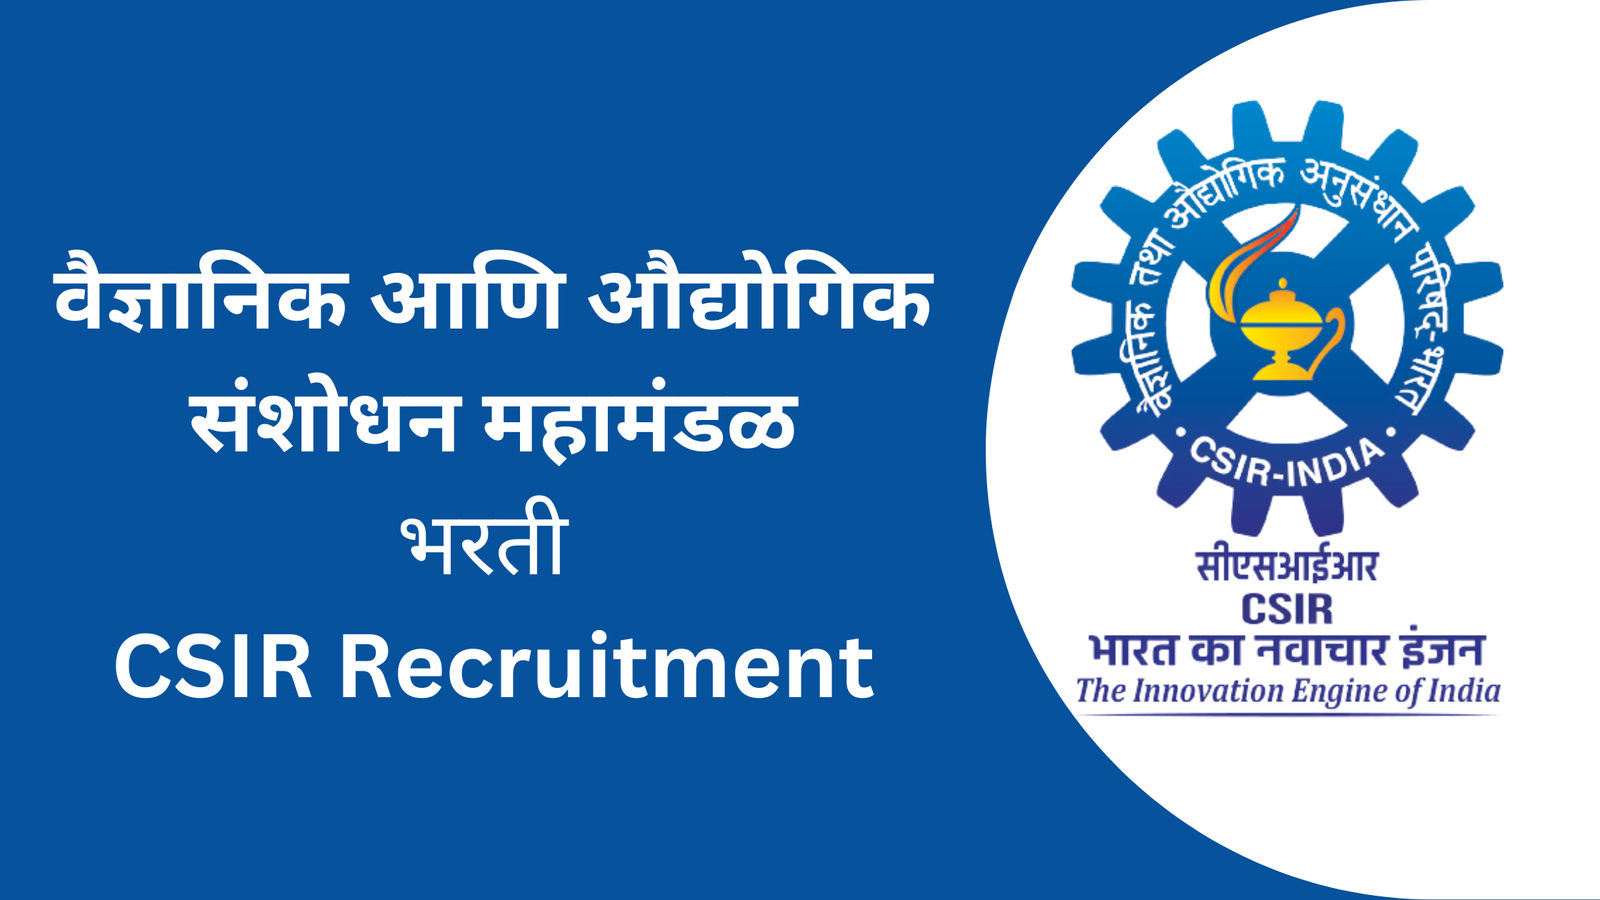 CSIR Recruitment - वैज्ञानिक आणि औद्योगिक संशोधन महामंडळ मध्ये 444 पदासाठी भरती